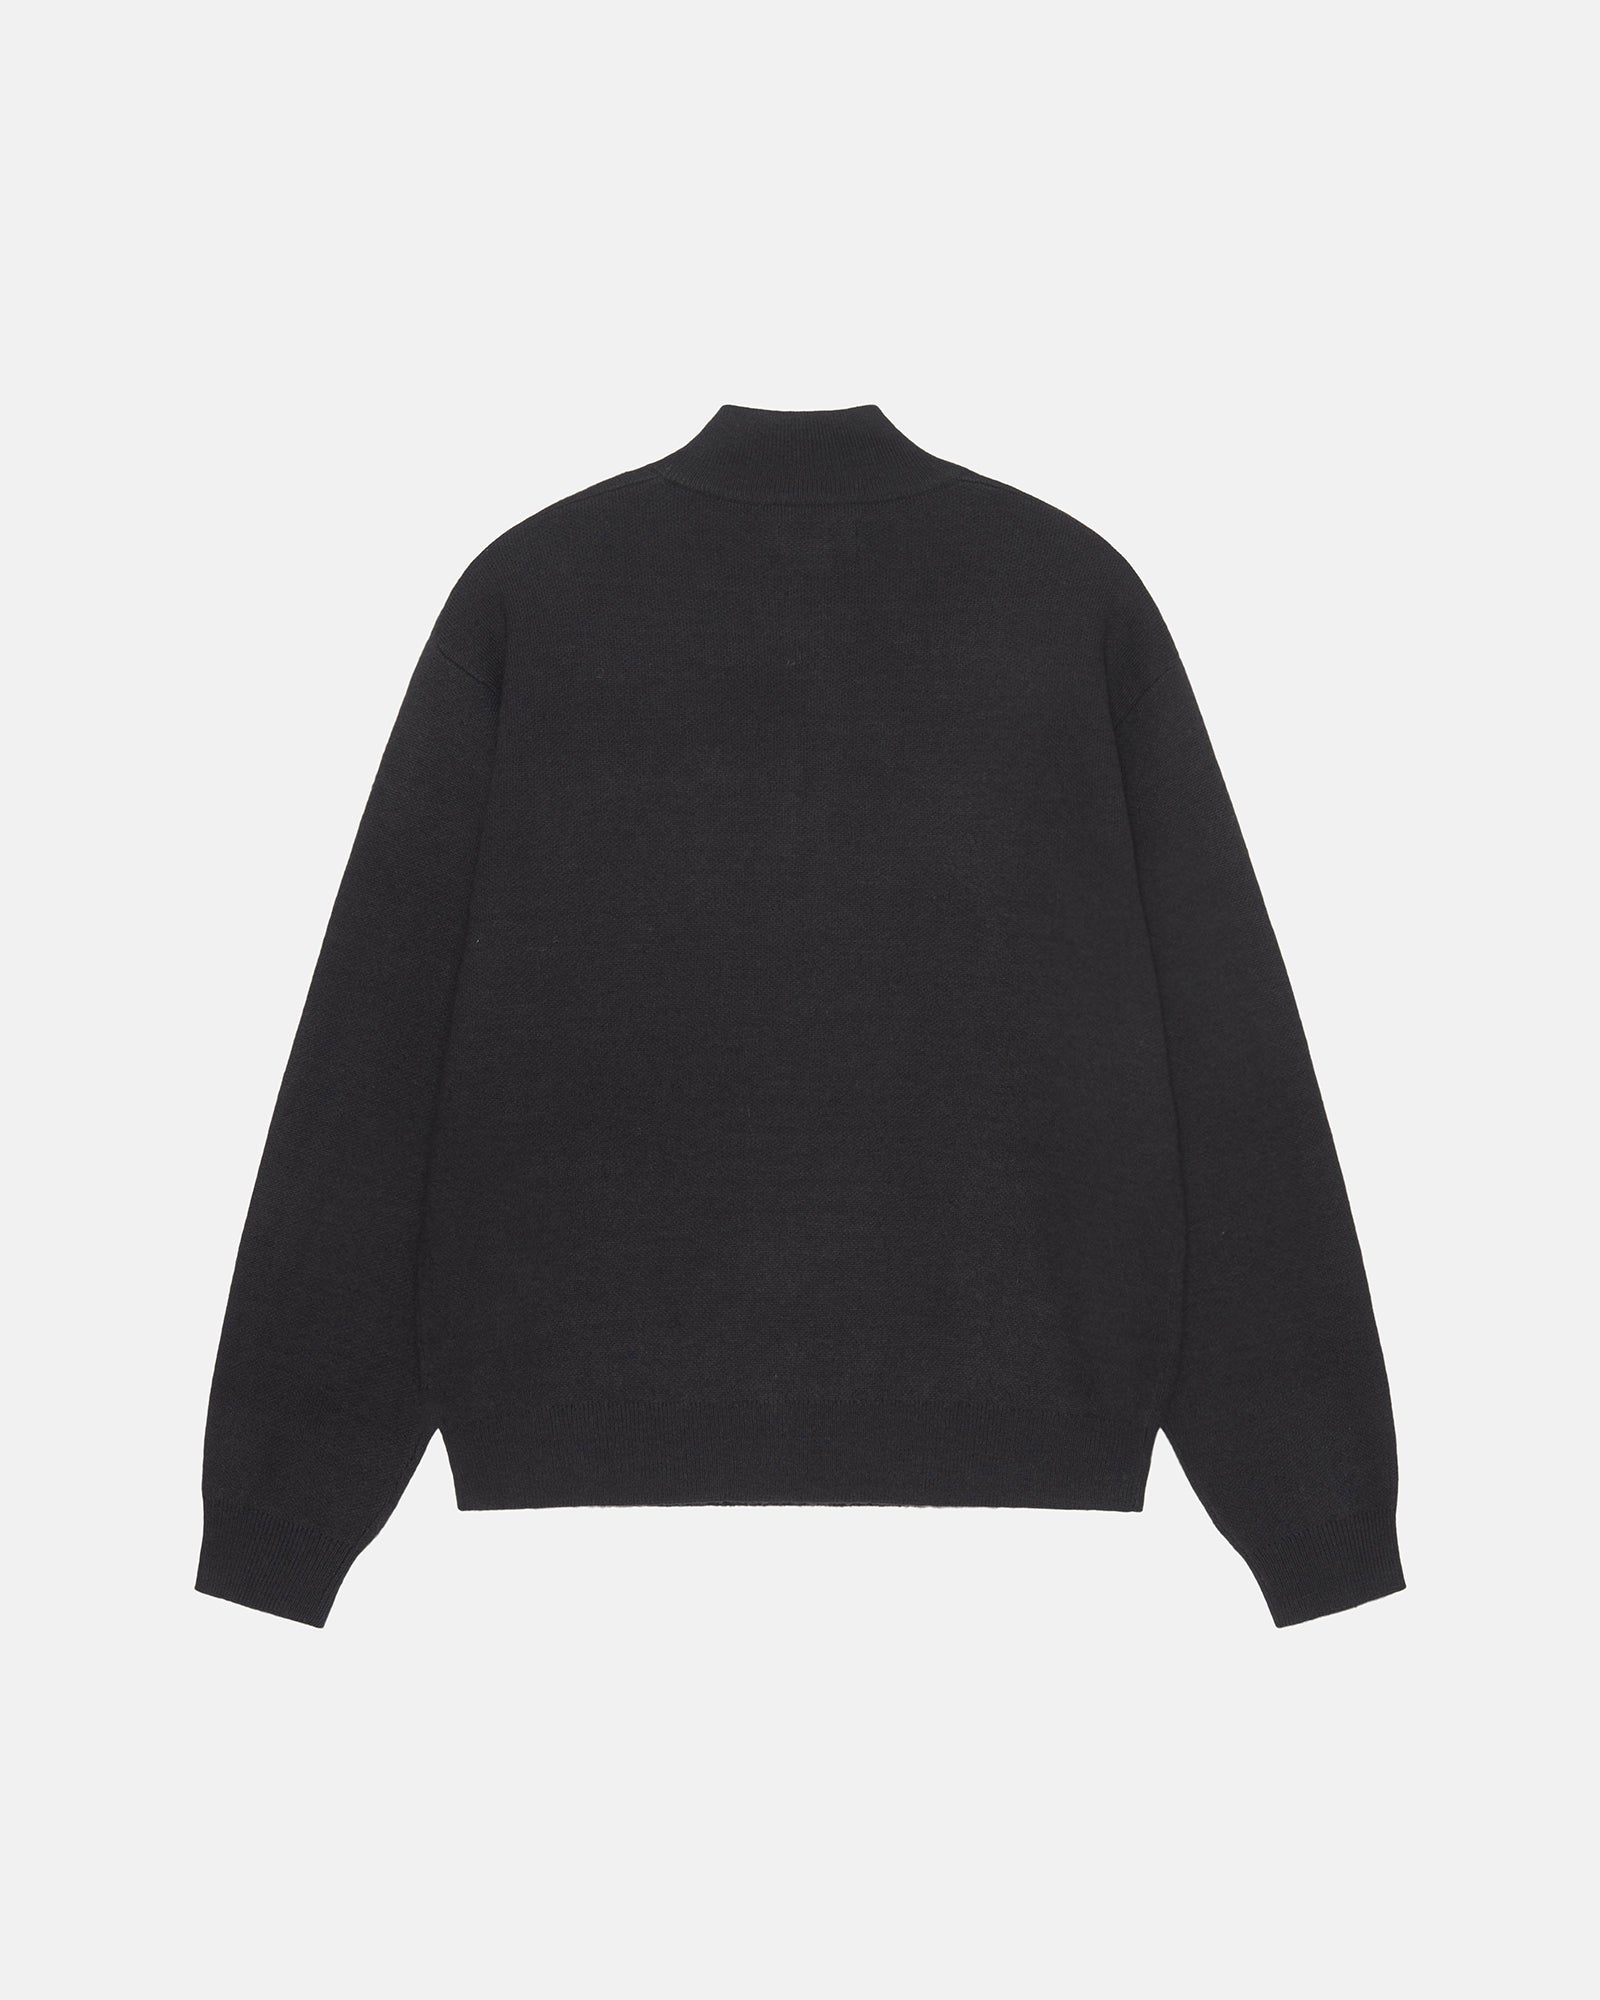 人気デザイナー Stussy Stock Sweater Black ニット セーター 黒 ...